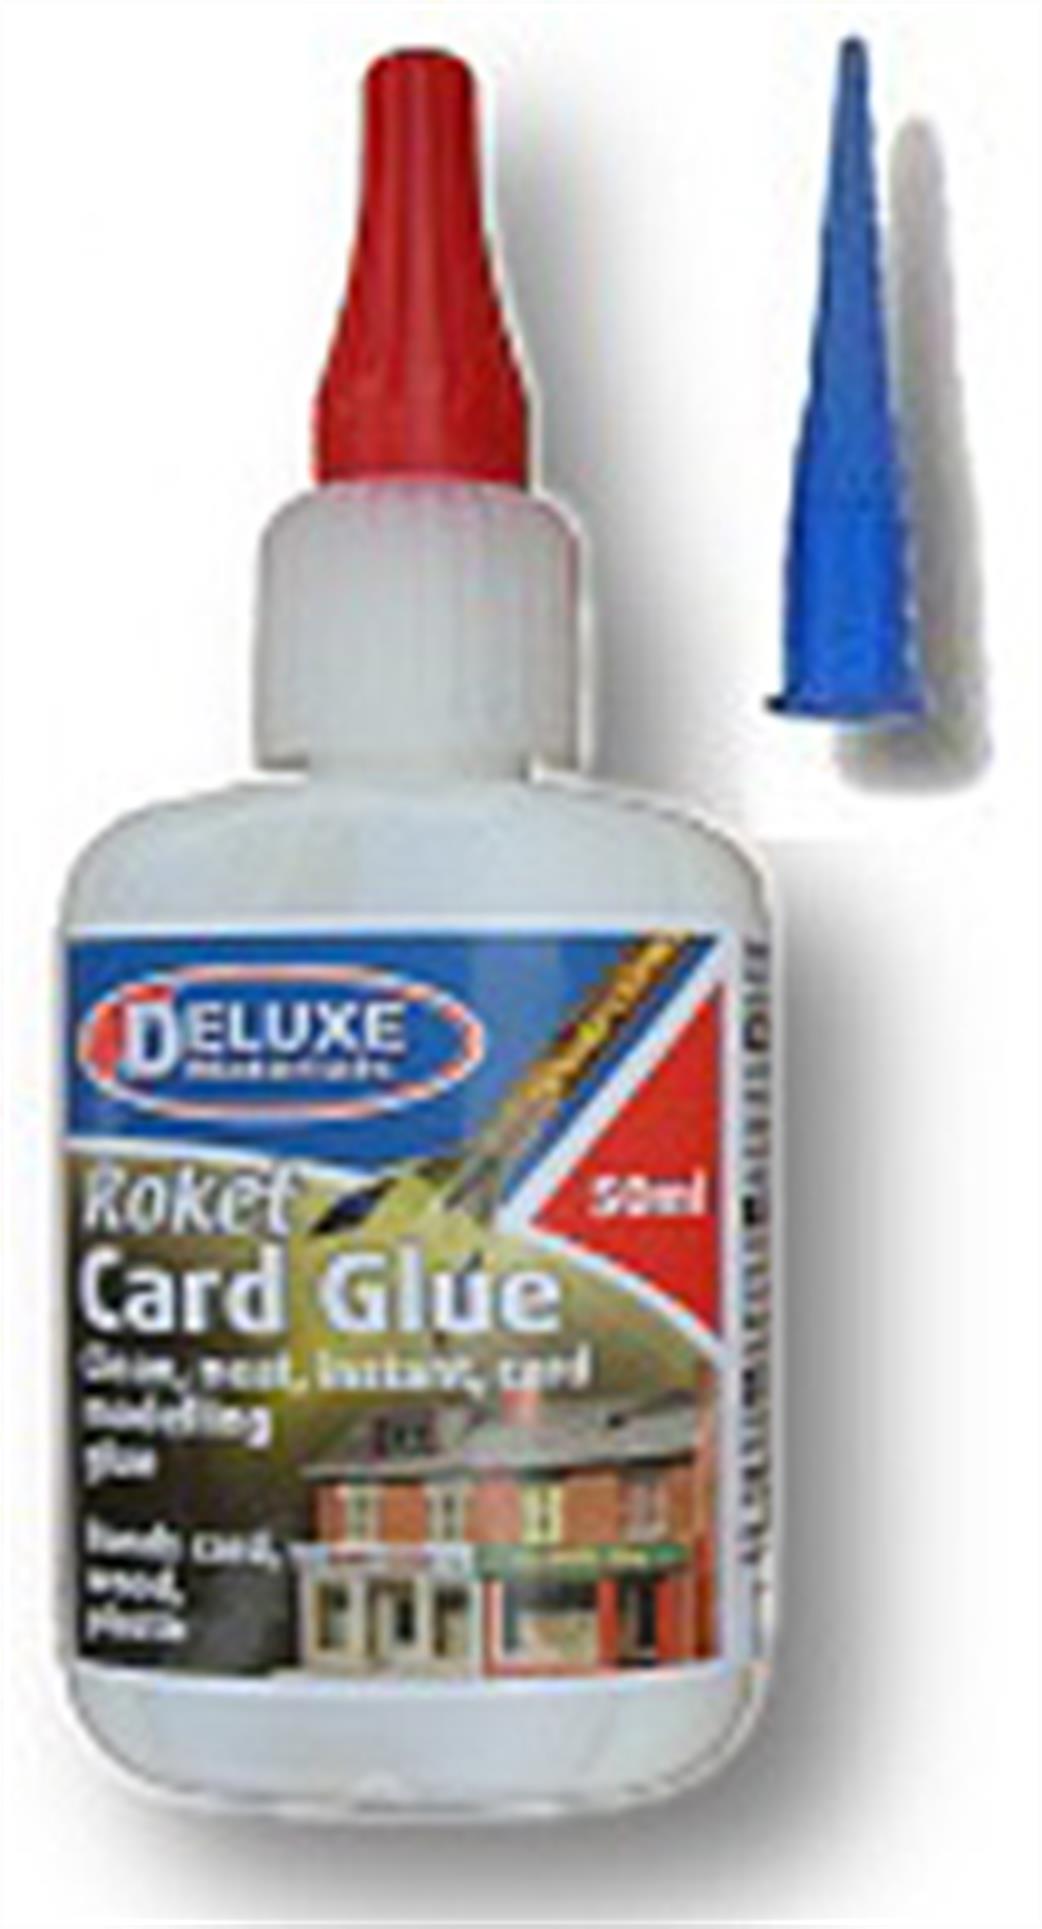 Deluxe Materials  AD57 Roket Card Glue 50ml Pot